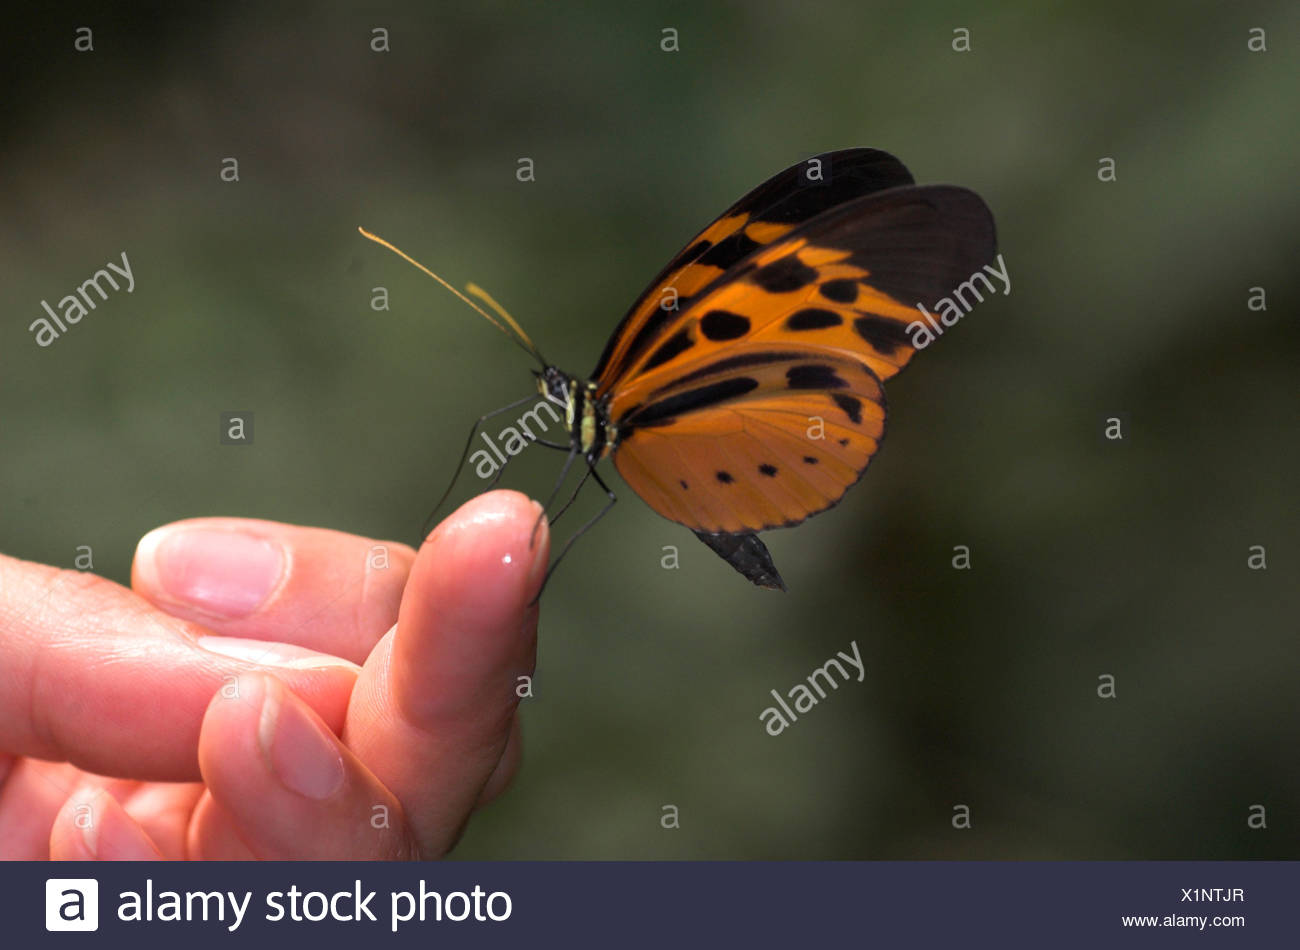 Bộ sưu tập cánh vẩy 4 - Page 37 Butterfly-feeding-on-sweat-on-hand-of-tourist-athyrtis-mechanitis-manu-peru-X1NTJR